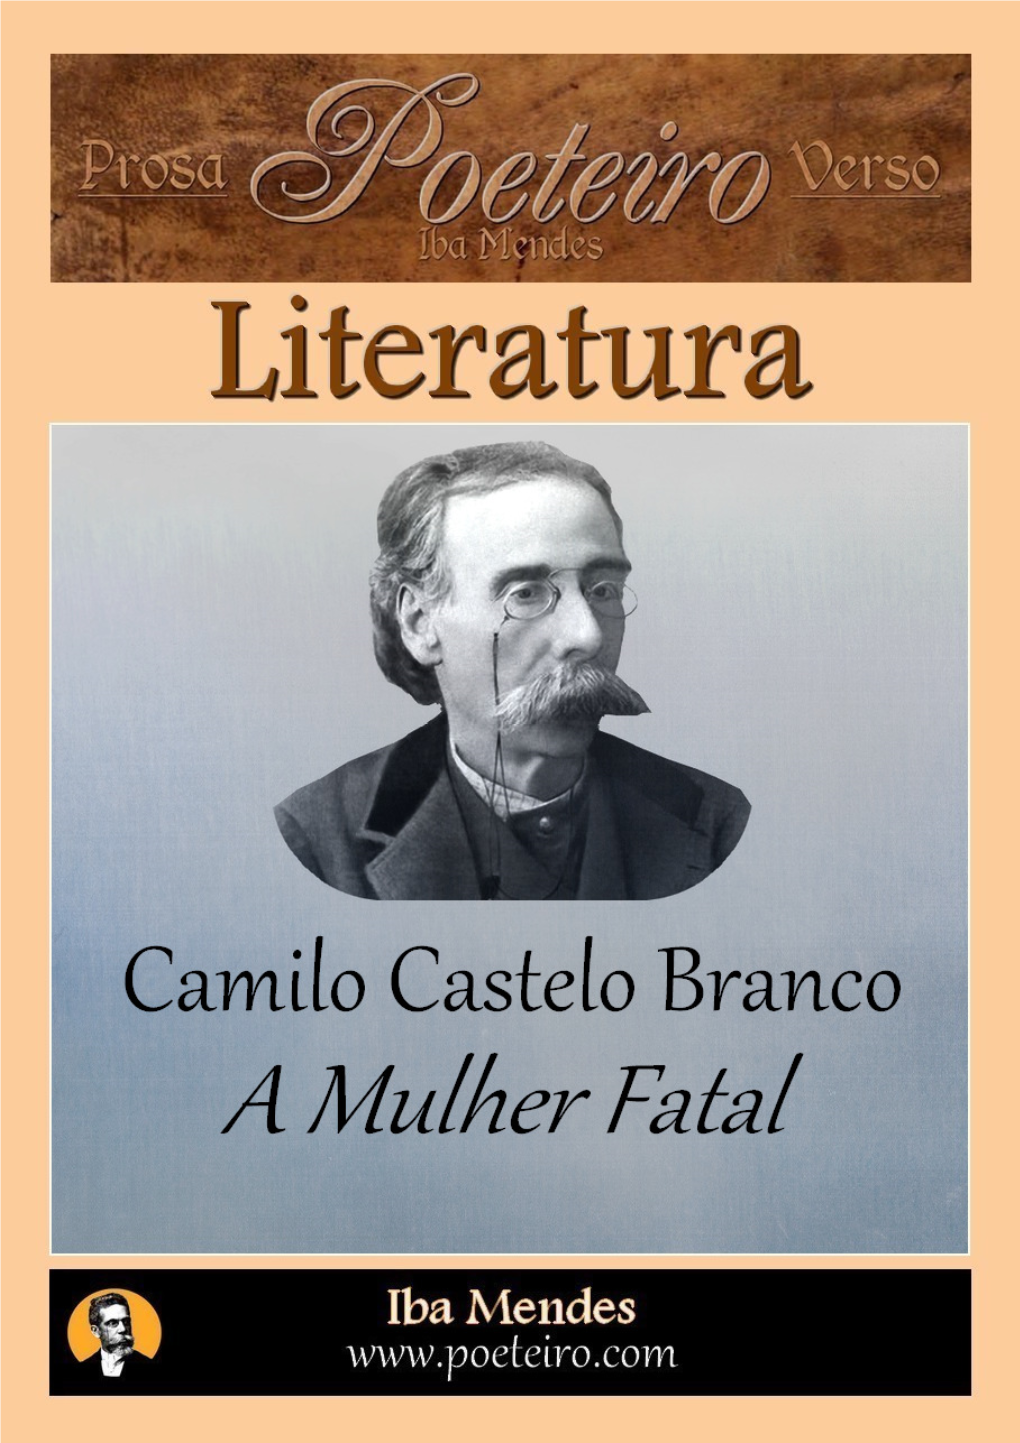 Camilo Castelo Branco a Mulher Fatal